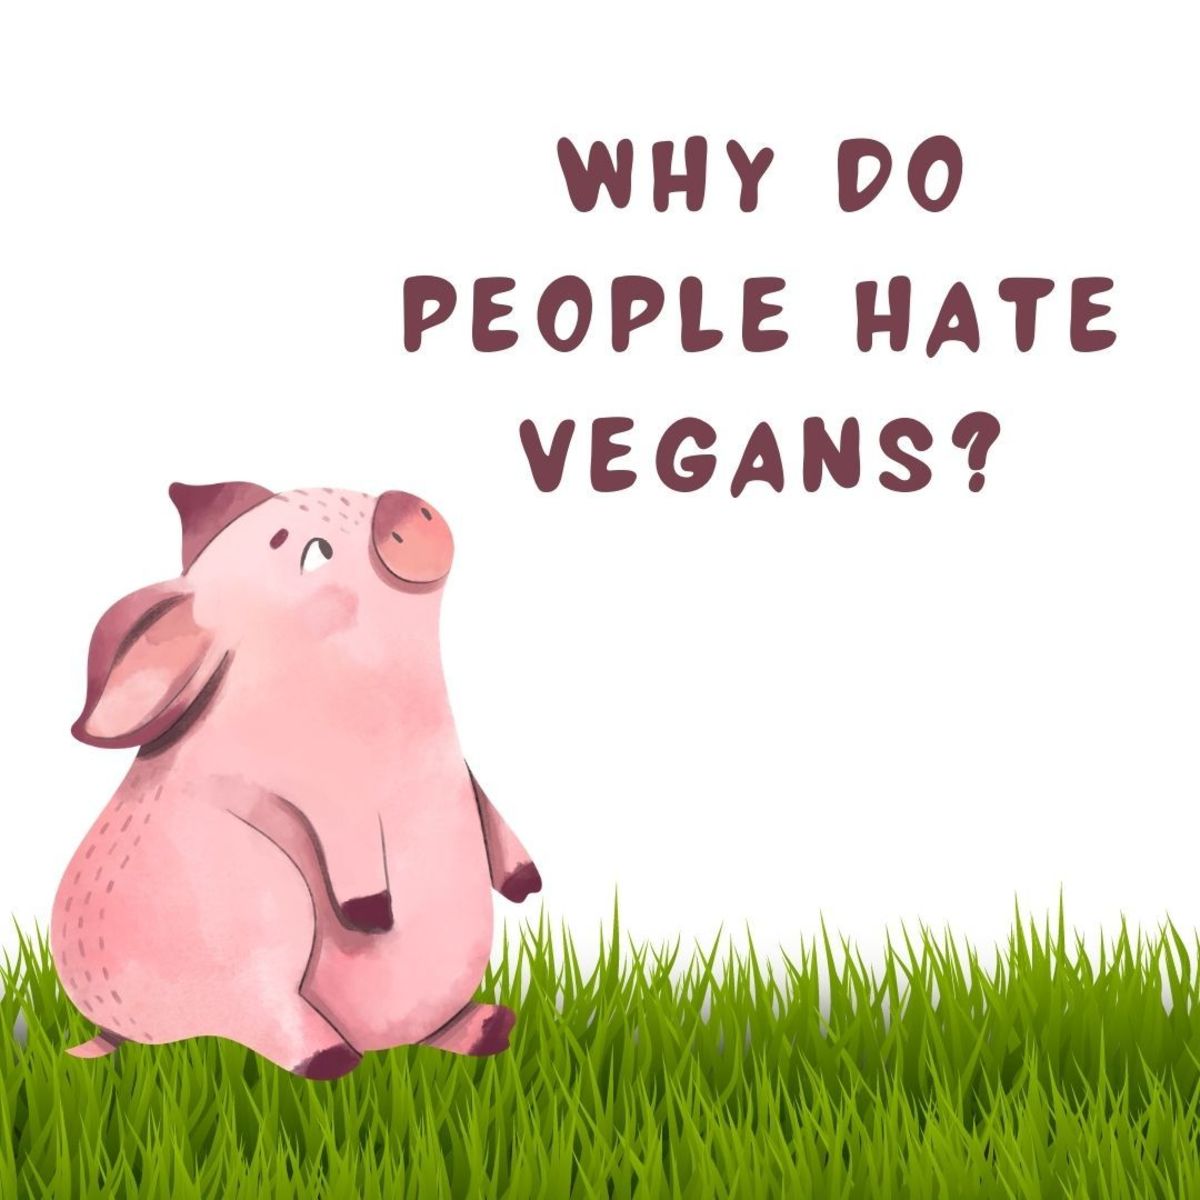 3 Reasons Why People Hate Vegans